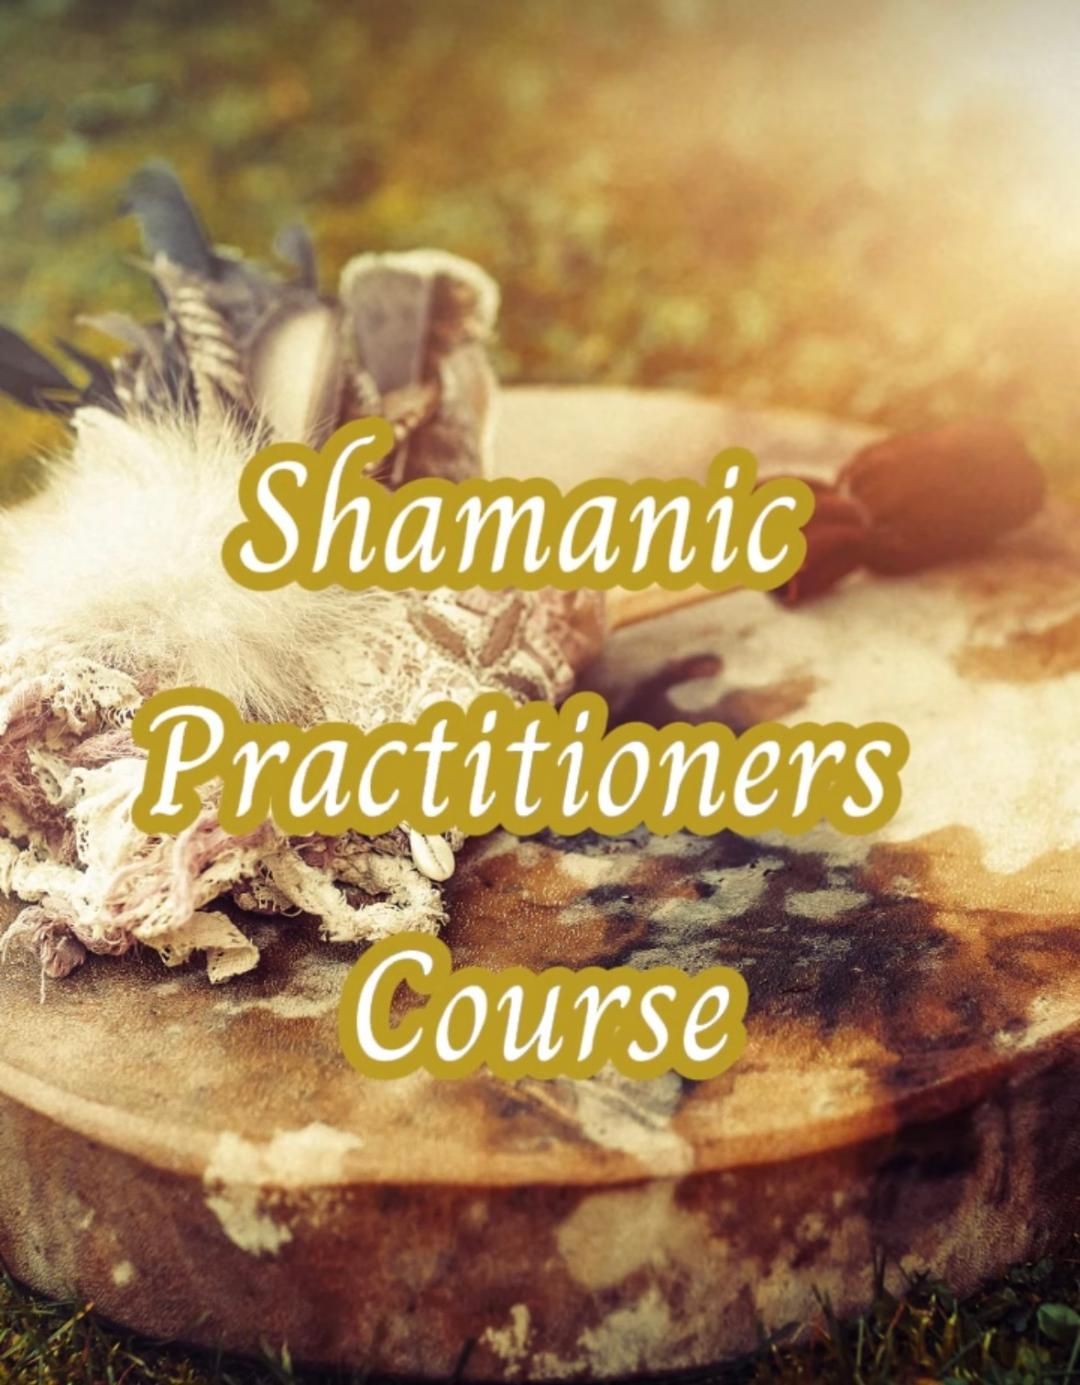 Shamanic Training Course